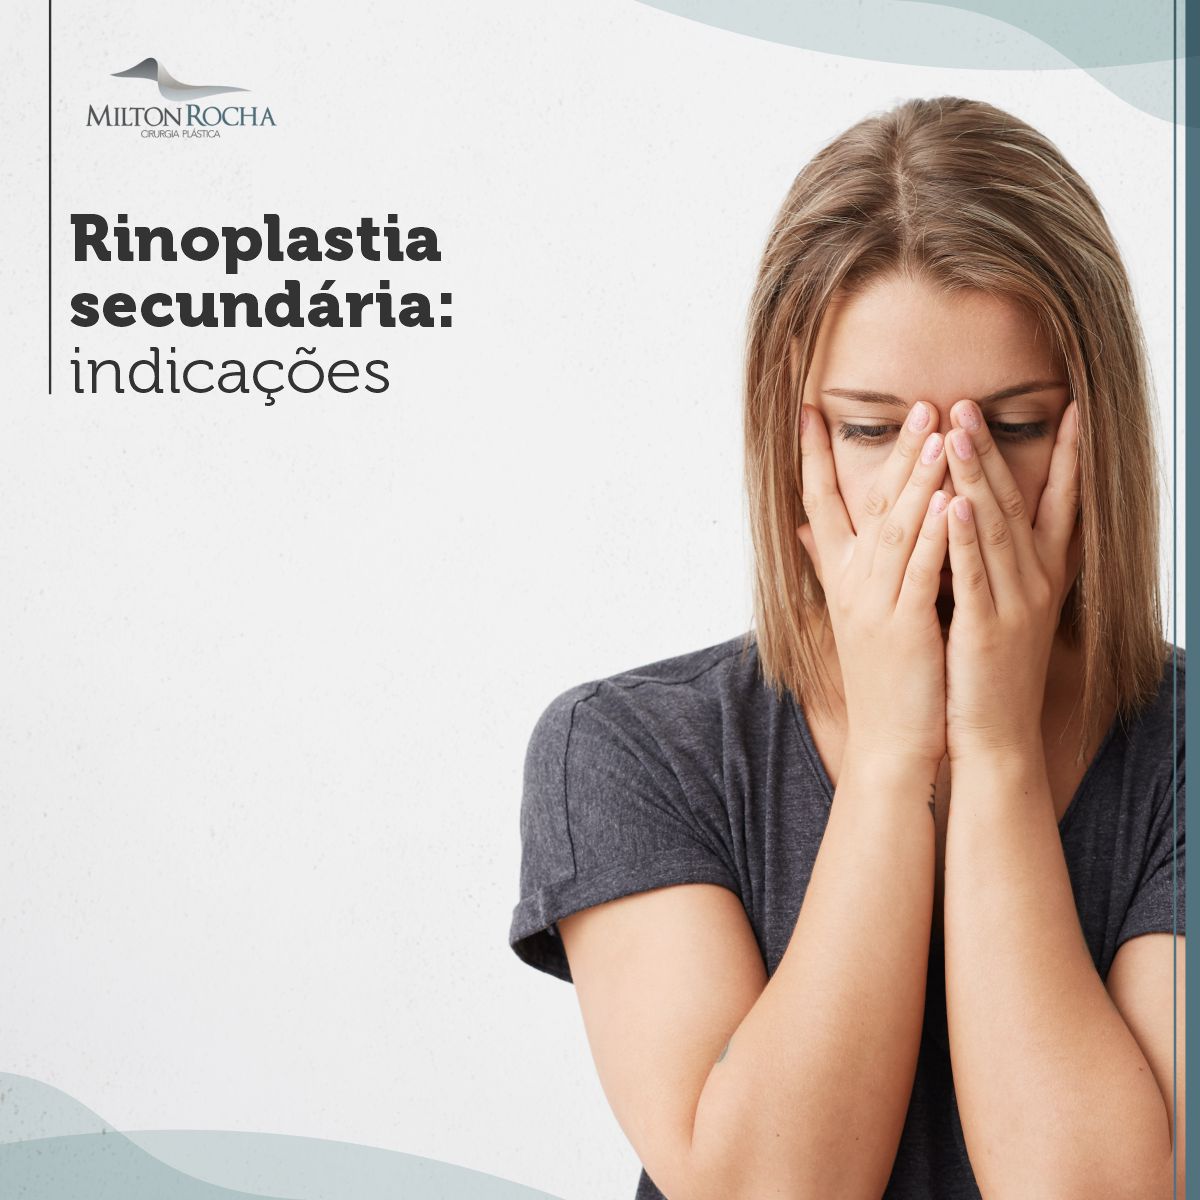 You are currently viewing Cirurgia Plastica Recife – Rinoplastia secundaria: Indicações